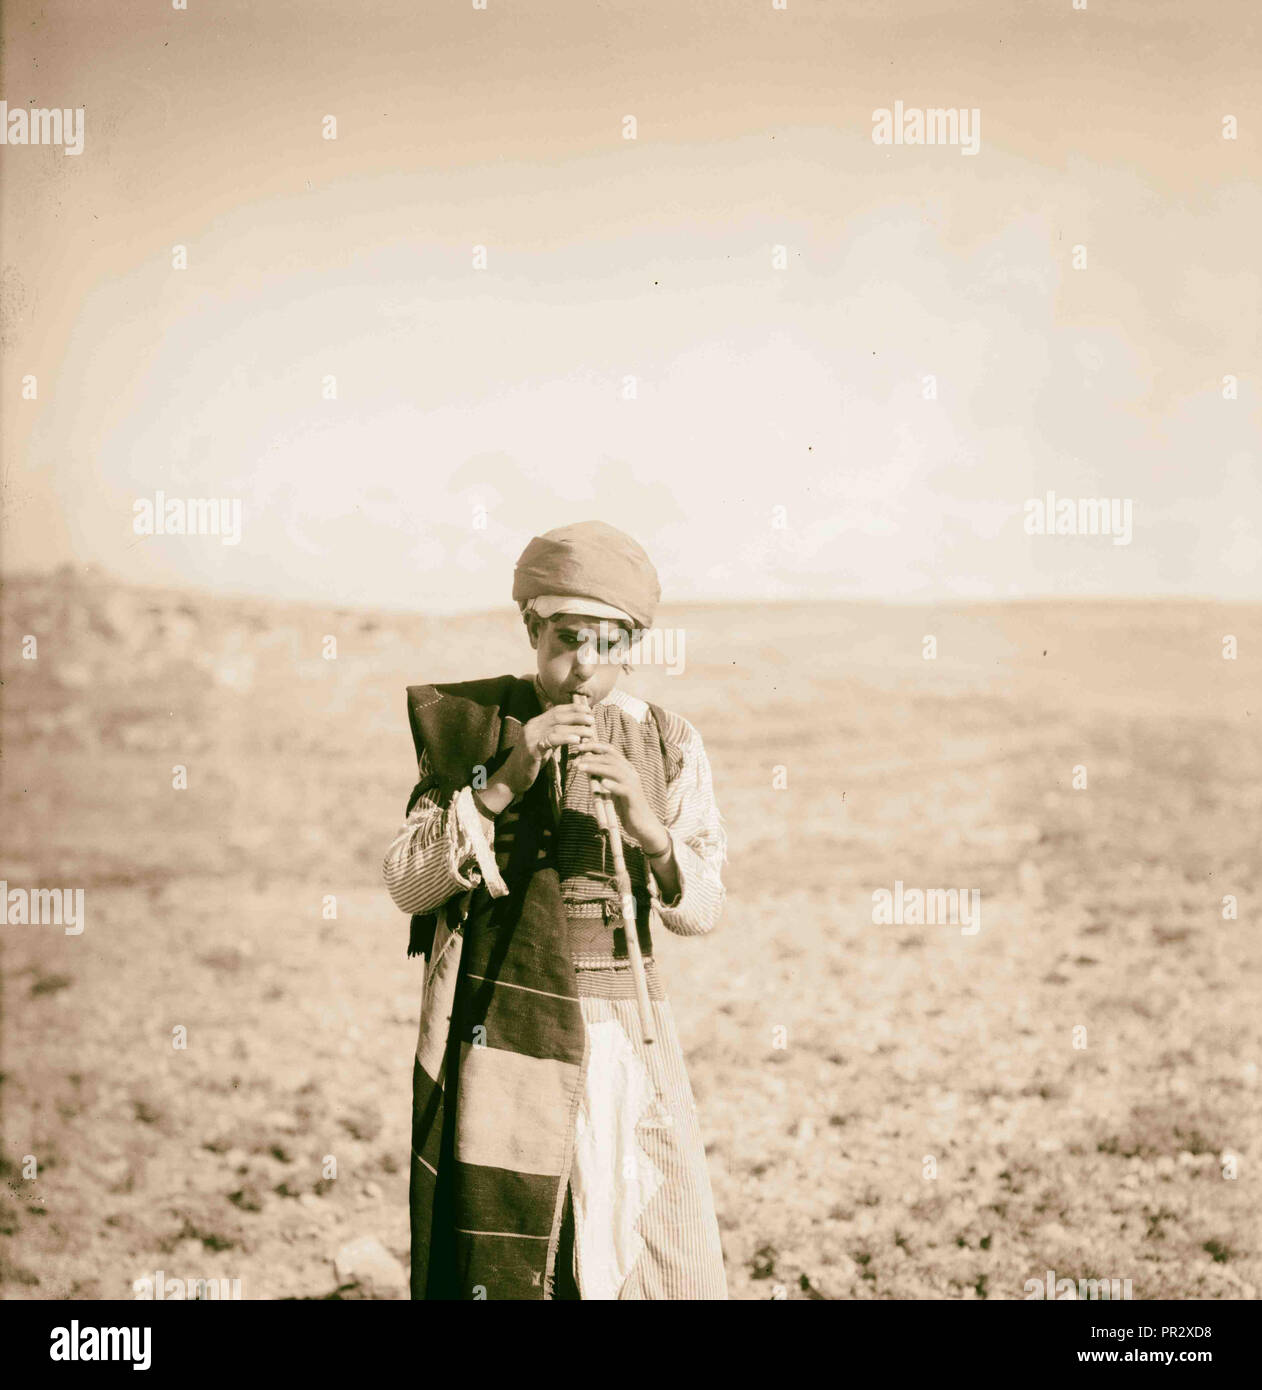 Bergers jouant de la flûte 1898, Moyen-Orient, Israël et/ou Palestine Banque D'Images